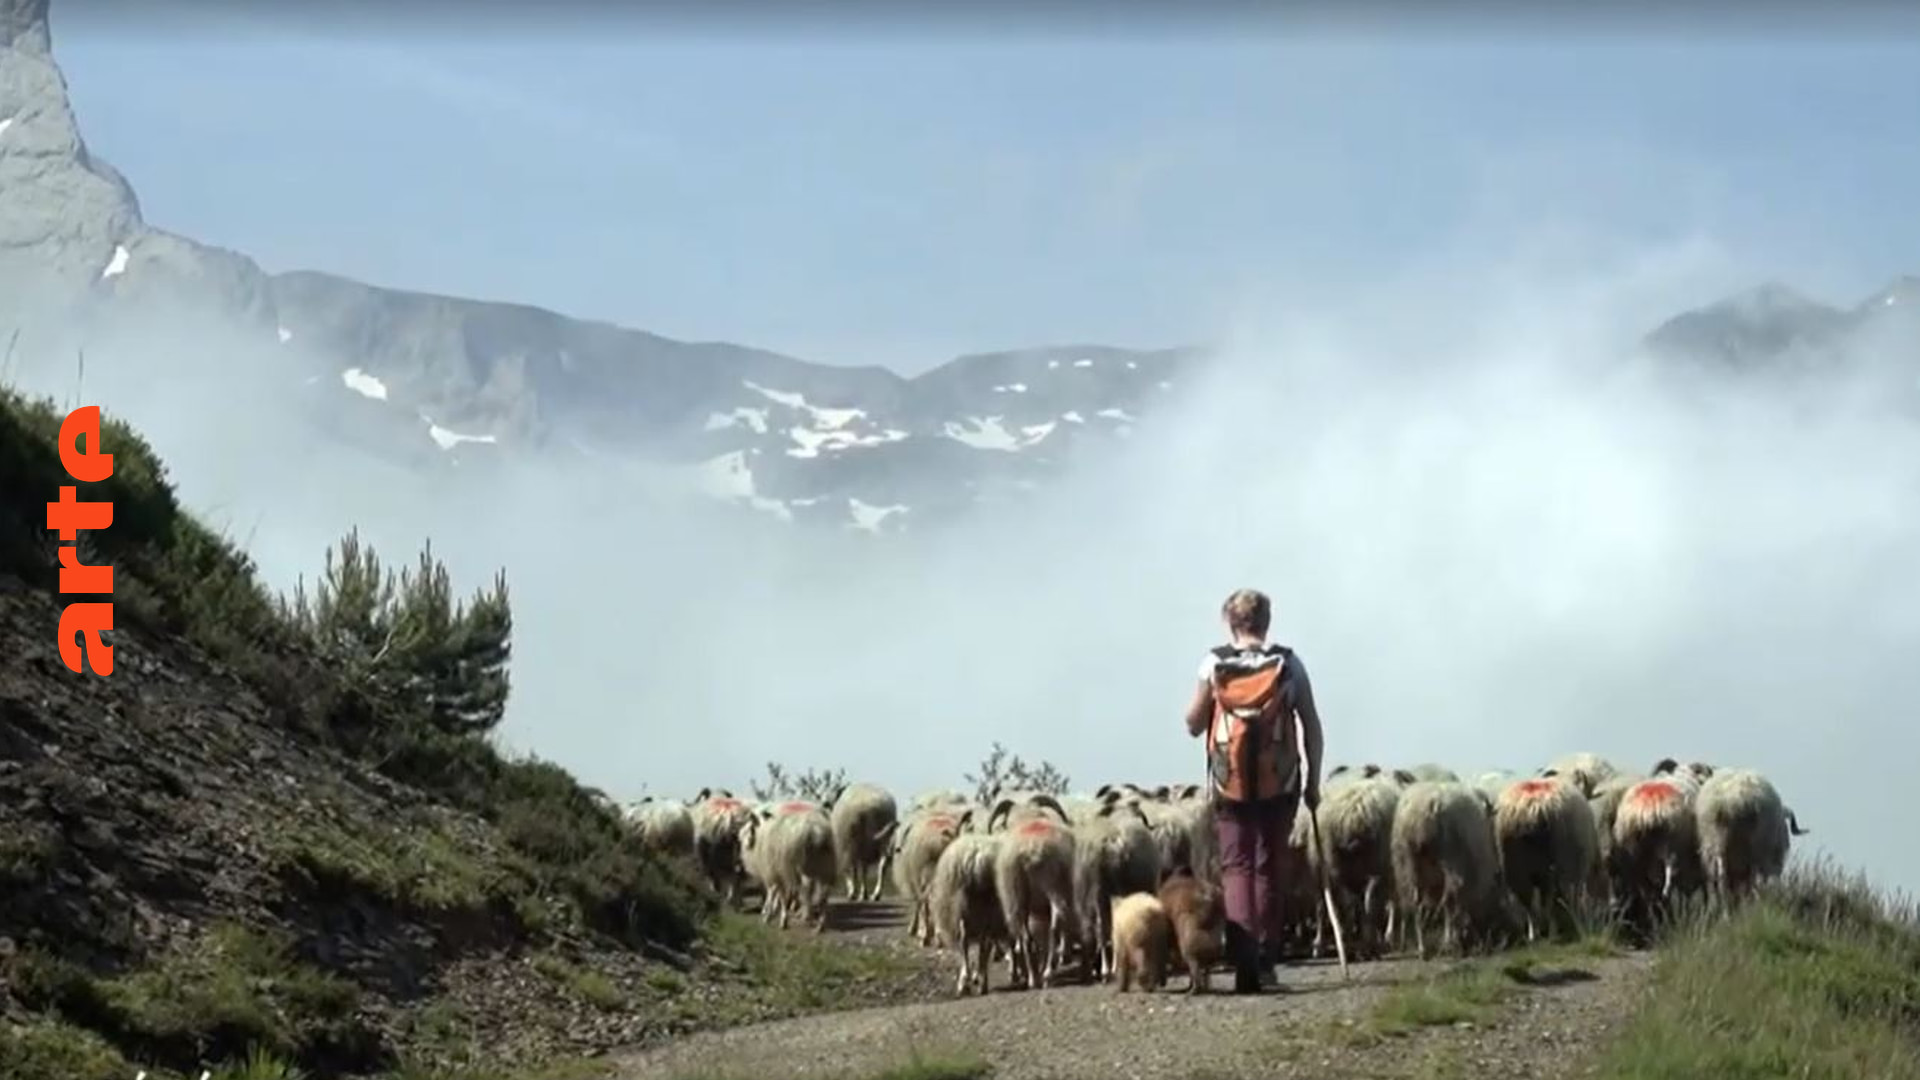 Pyrenäen: Ganz oben mit den Schafen